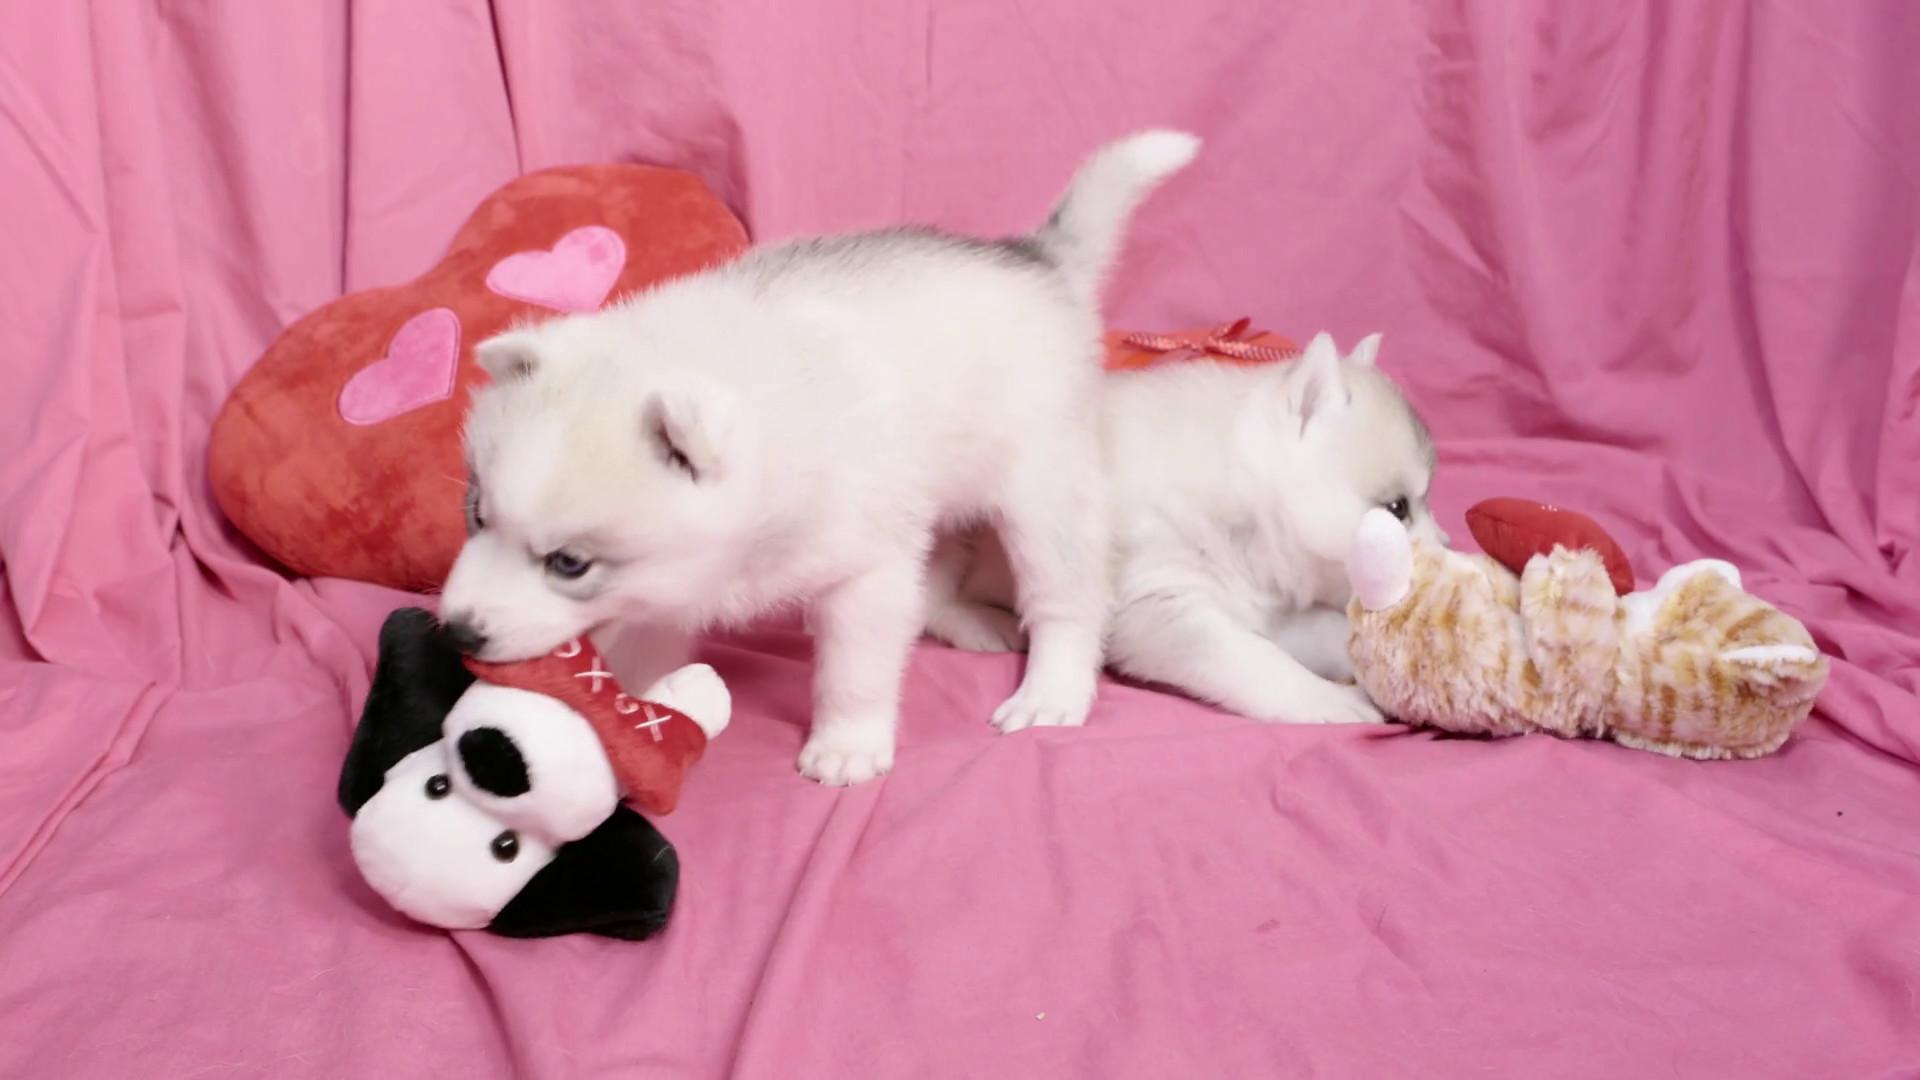 Puppy Valentine Wallpaper